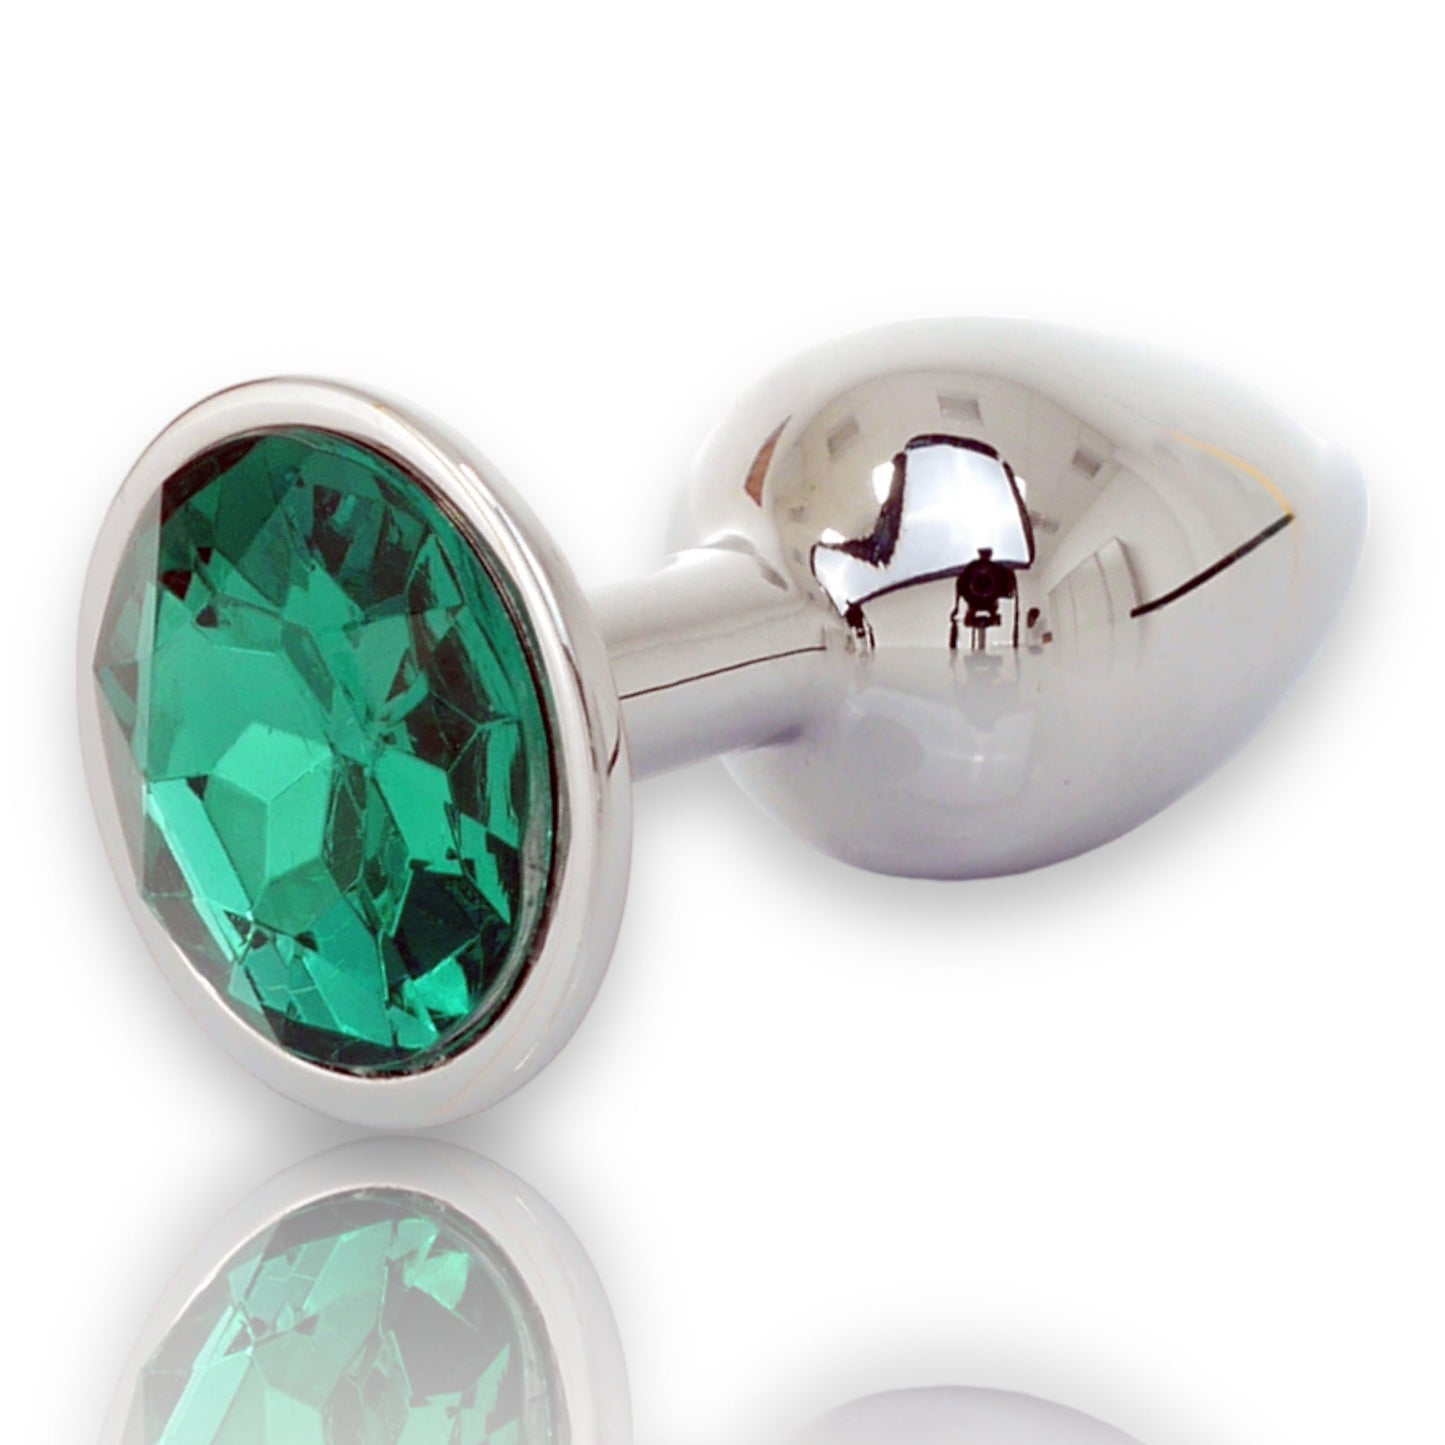 Bossoftoys - Silver Plug - Diamond Stone - Length 7 cm - Dia 2.7 cm - 4 Colors